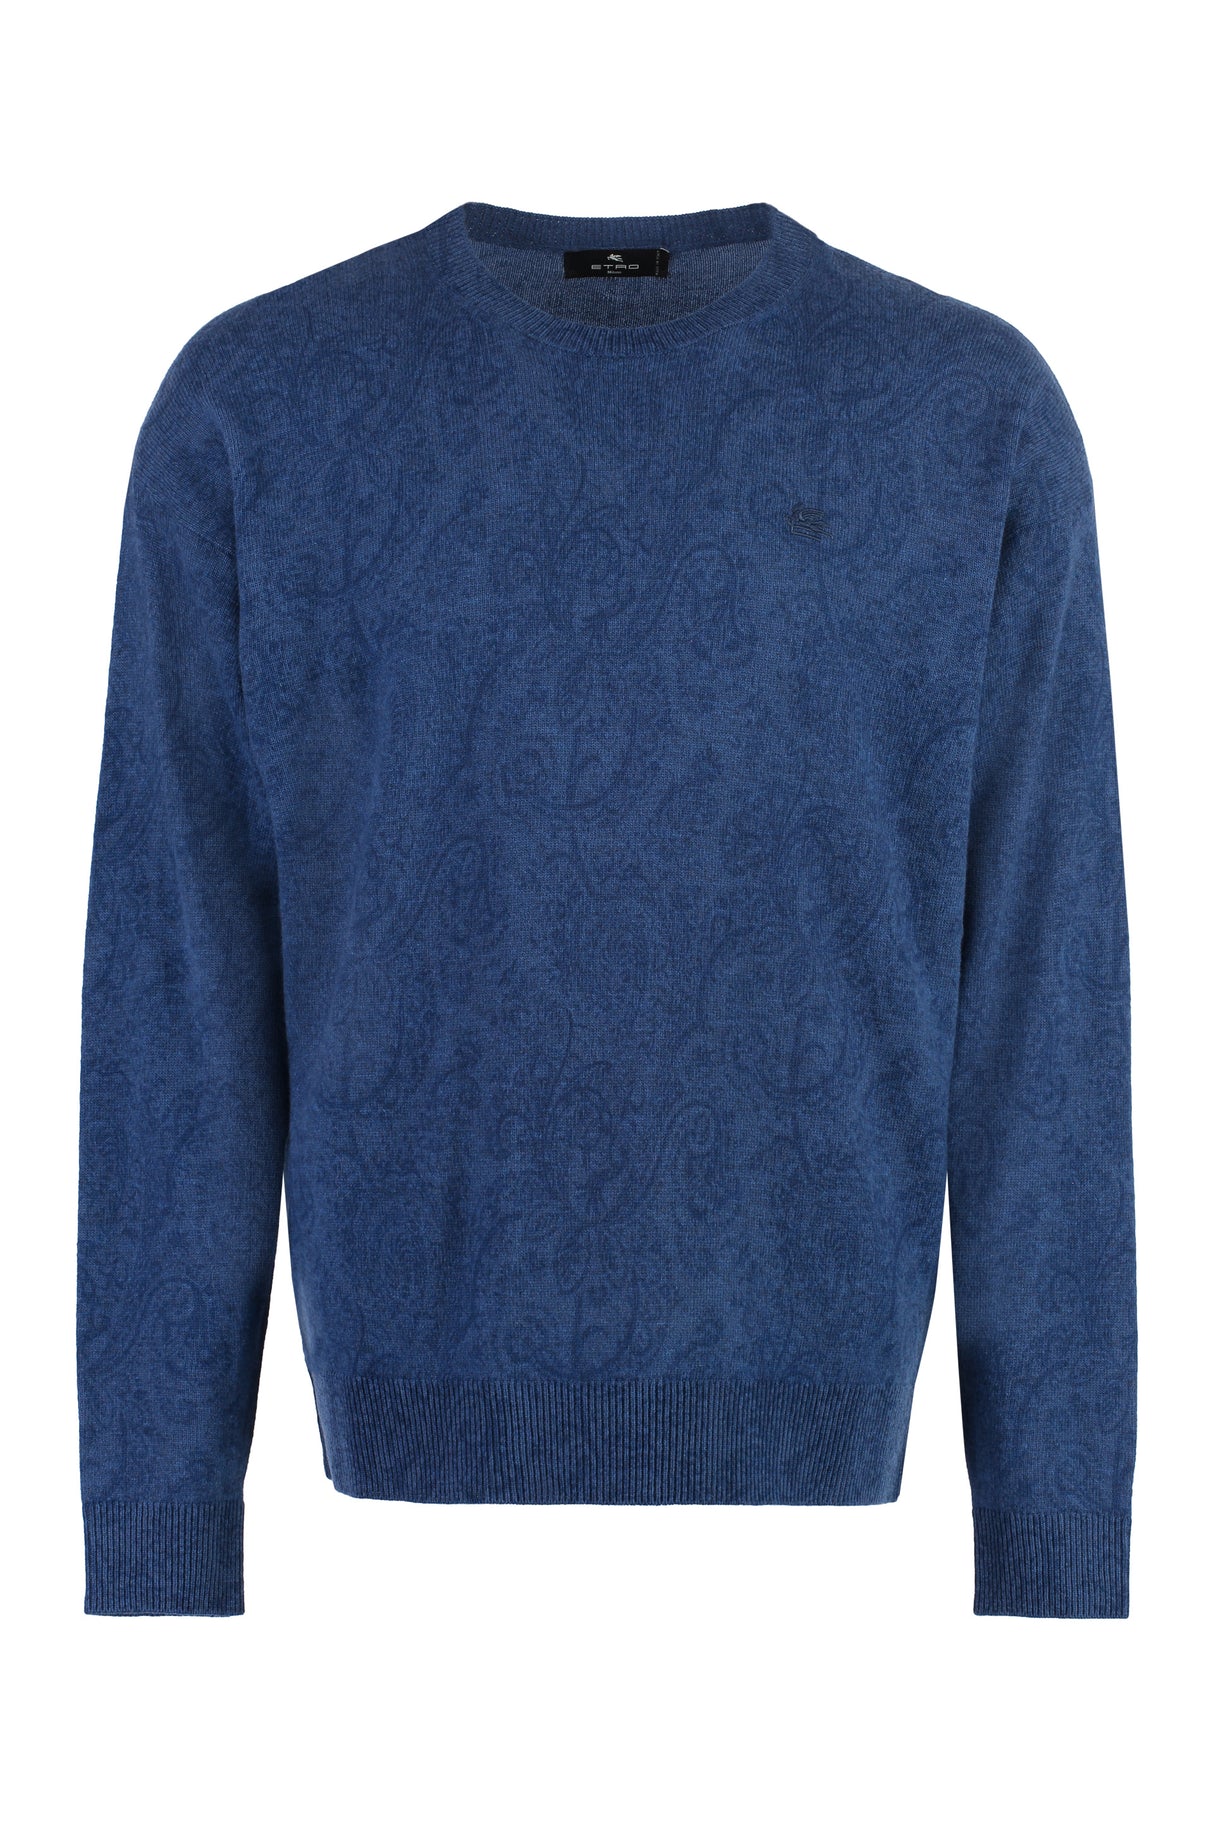 時尚男士藍色羊毛毛衣，具有印花圖案和條紋邊緣